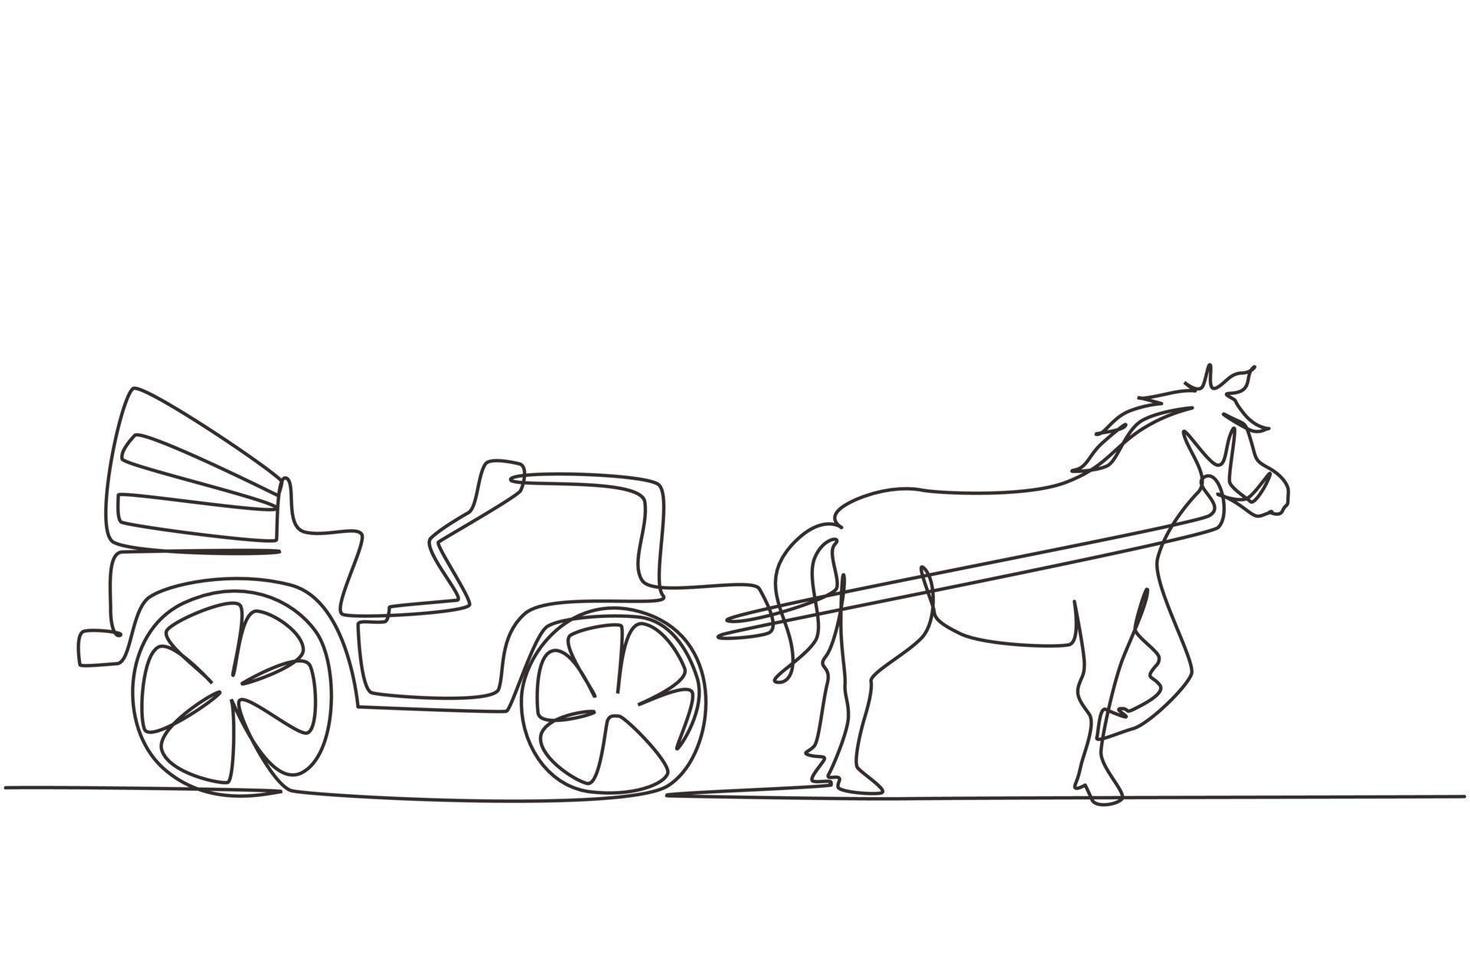 enkele lijntekening vintage vervoer, paardenkoets. oude koets met een paard, een paard trekt een koets achter zich aan. moderne doorlopende lijn tekenen ontwerp grafische vectorillustratie vector